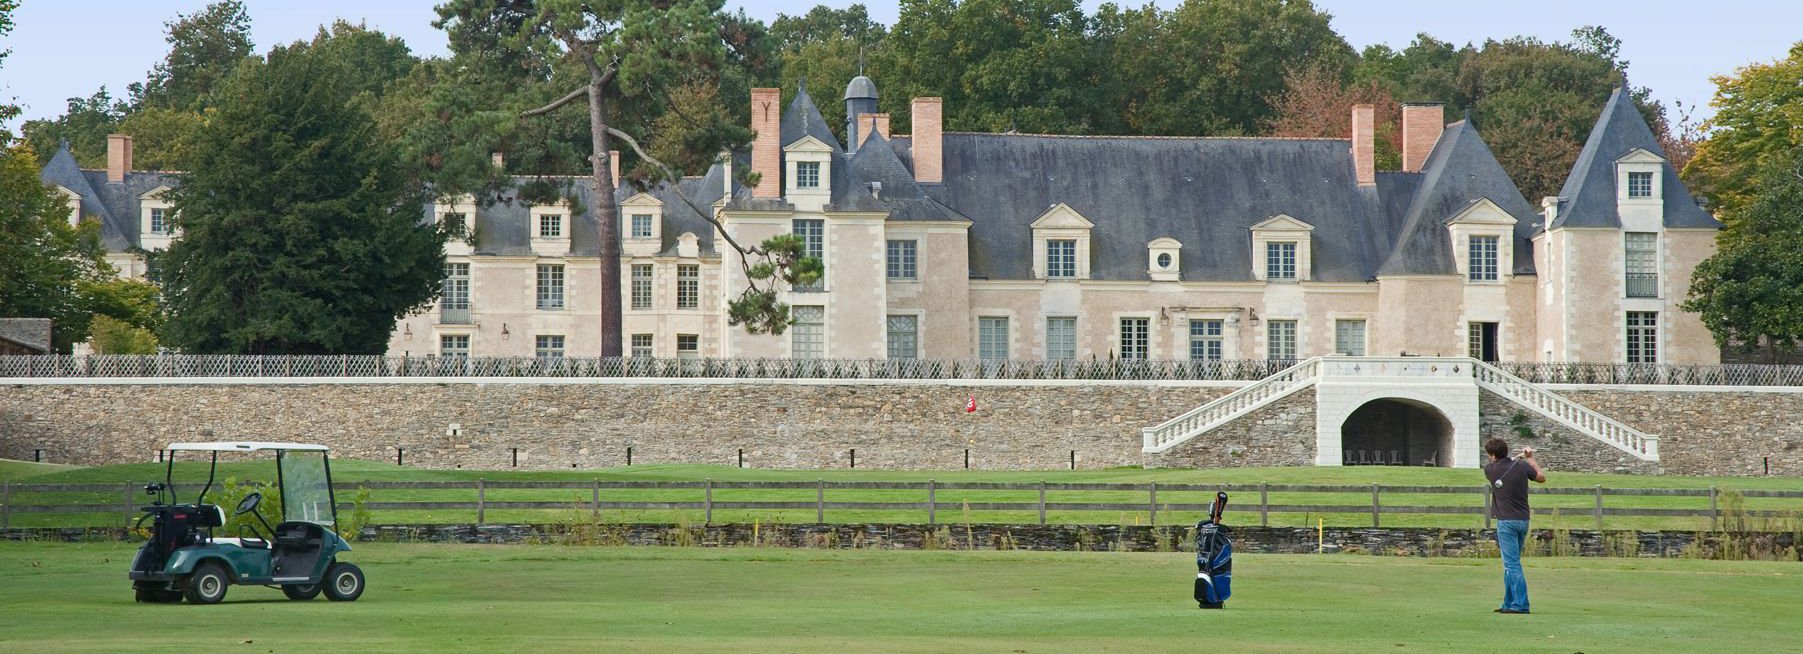 Château de la Perrière | Castle with golf course near Angers